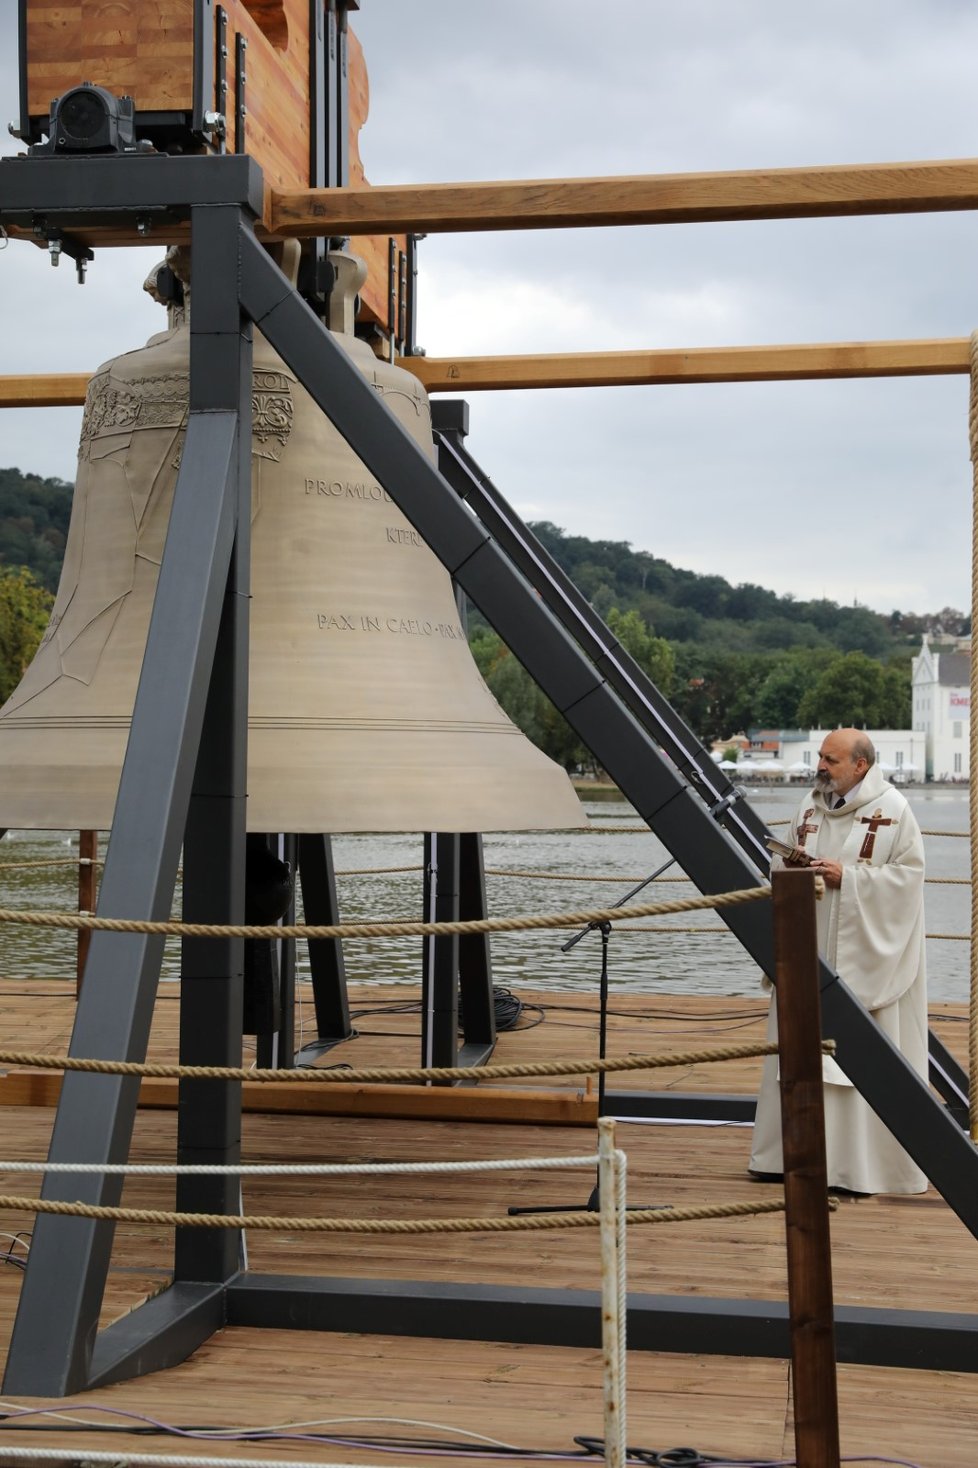 Odhalení památečního Zvonu #9801, který má připomínat osud zvonů odvezených za druhé světové války nacisty z Protektorátu Čechy a Morava do Německa. 28. srpna 2022, Praha.